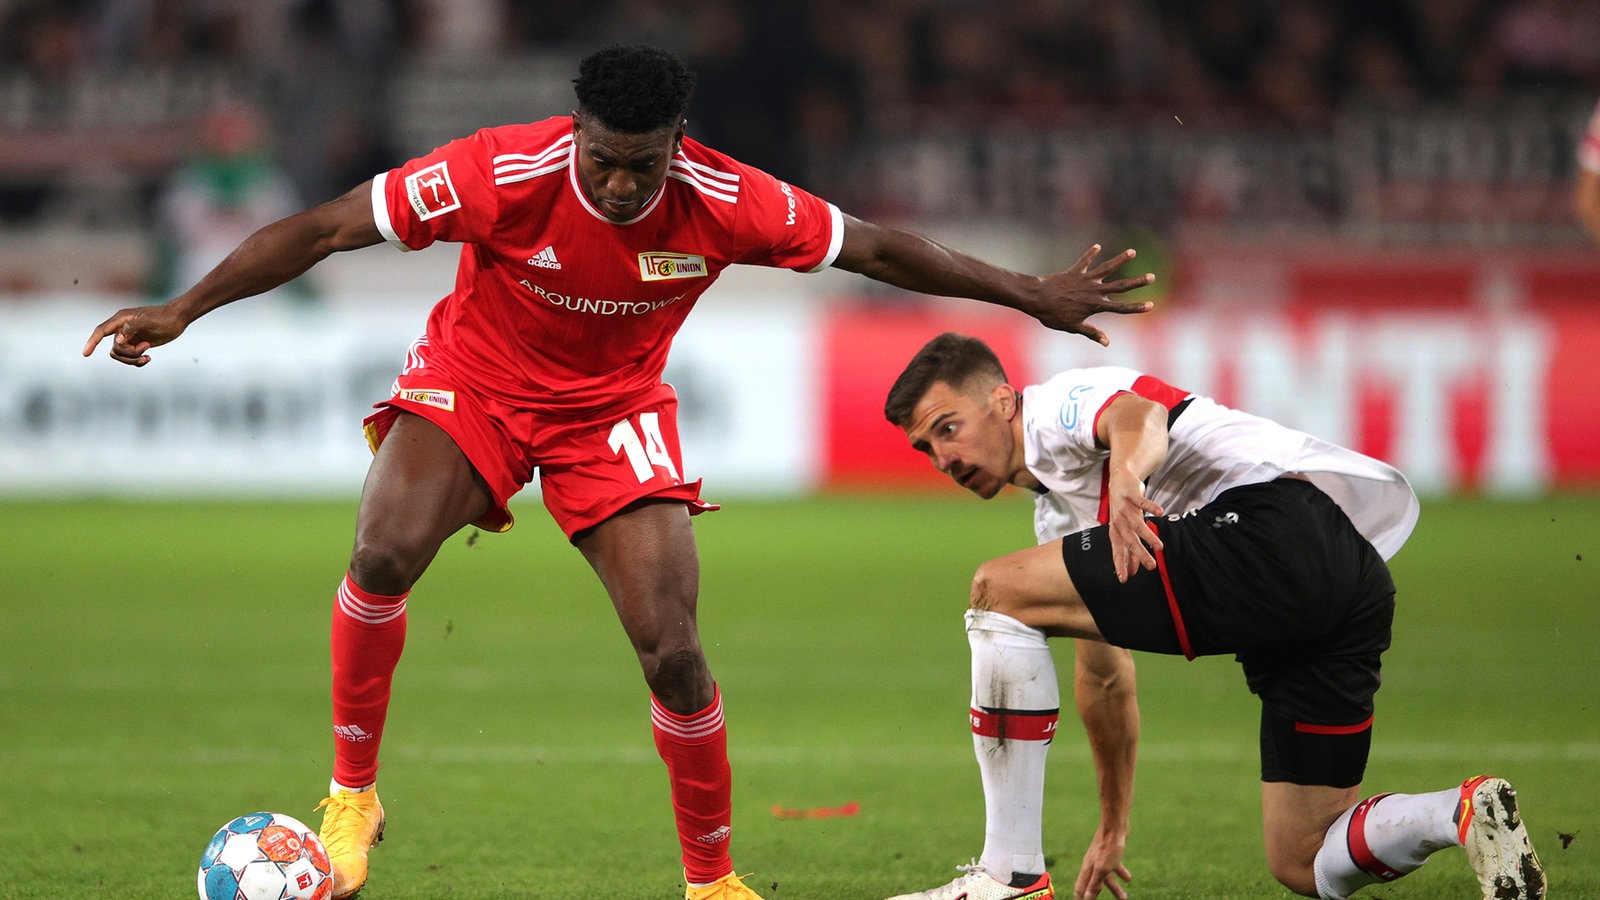 soccer picks Silas Katompa Mvumpa VfB Stuttgart predictions best bet odds